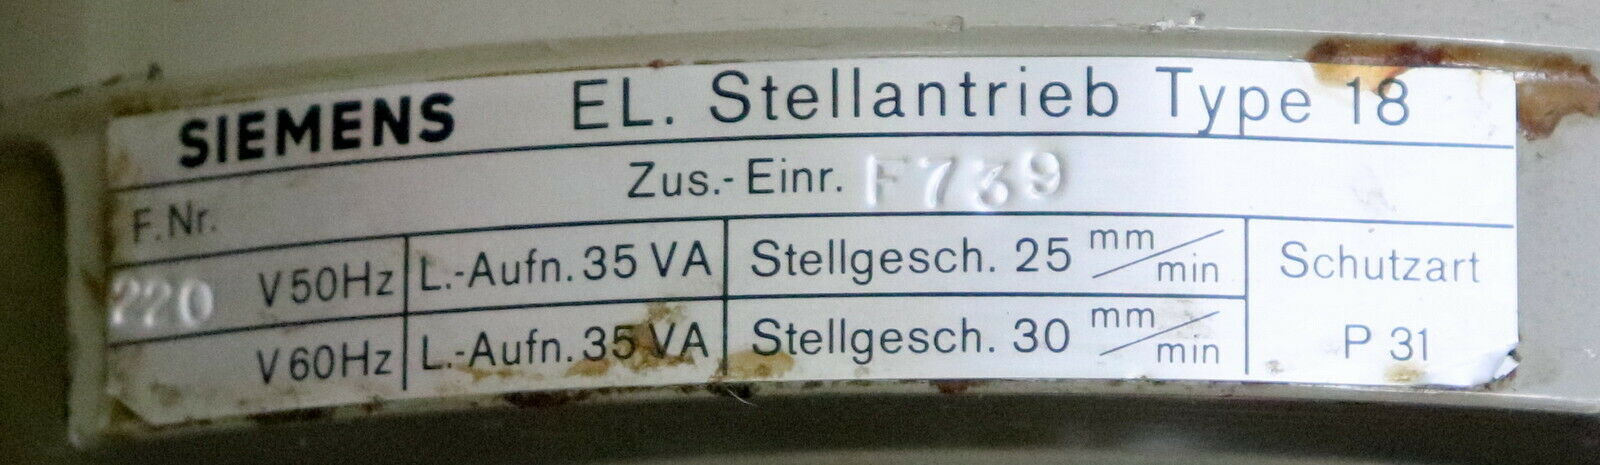 SIEMENS Elektrischer Stellantrieb für Ventile Type 18 Zus.-Einr. F739 - 2kN